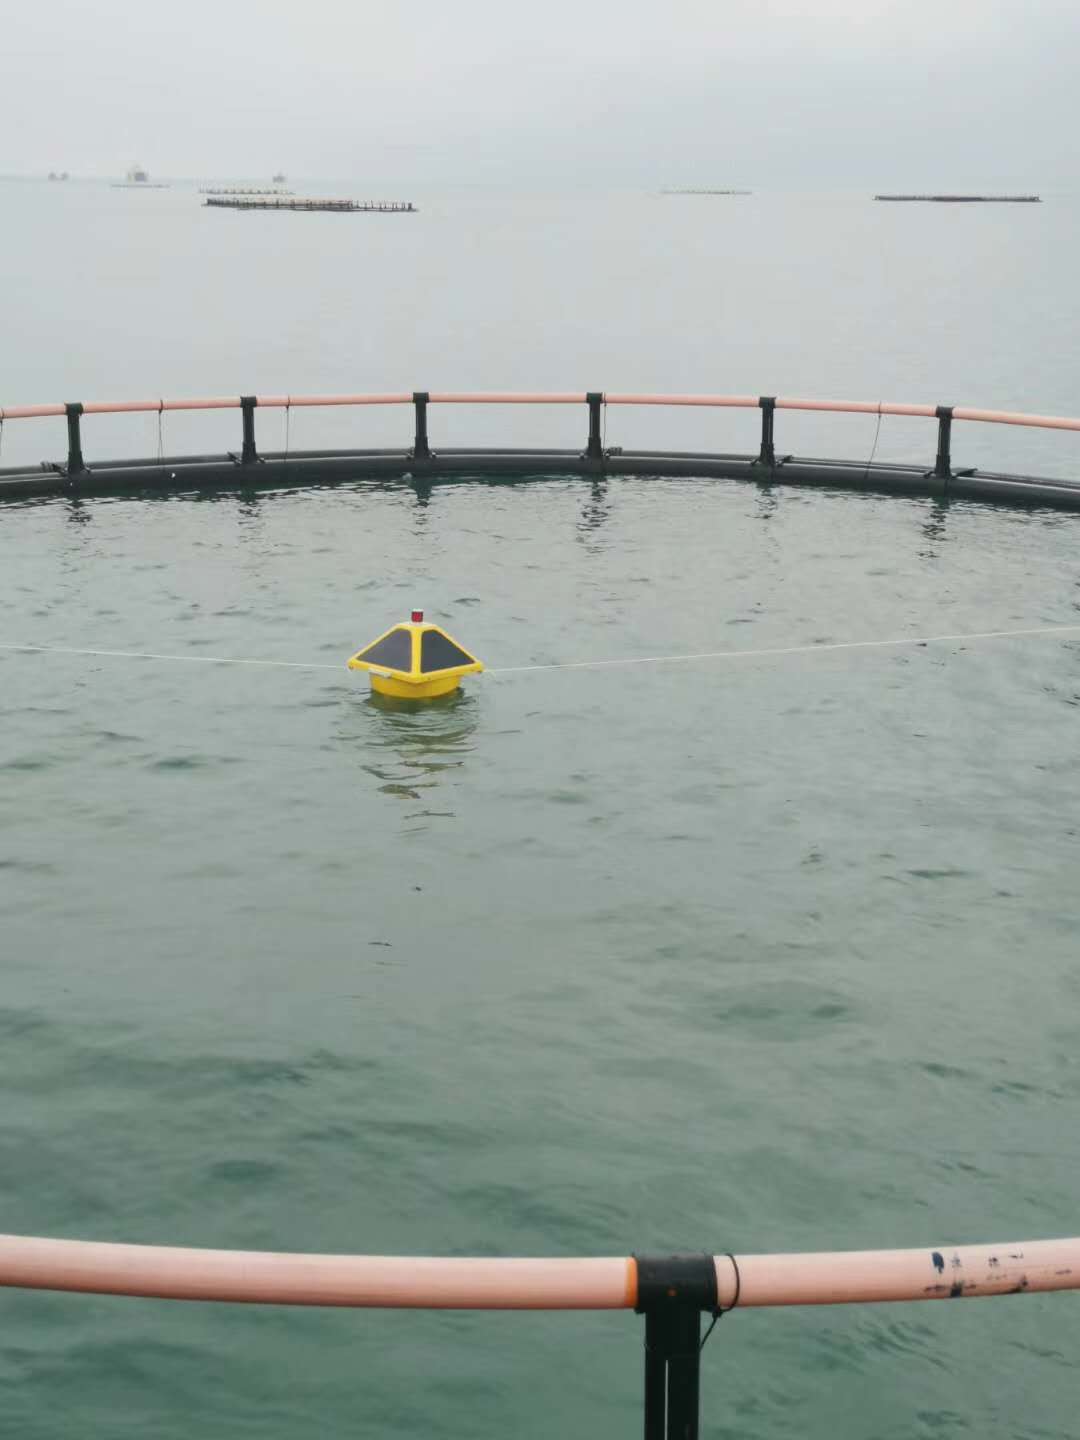 Probest PB -060-AY Monitoreo de la calidad del agua del lago de boyas Monitoreo en tiempo real de la calidad del agua, temperatura, PH, conductividad, oxígeno disuelto y turbidez.